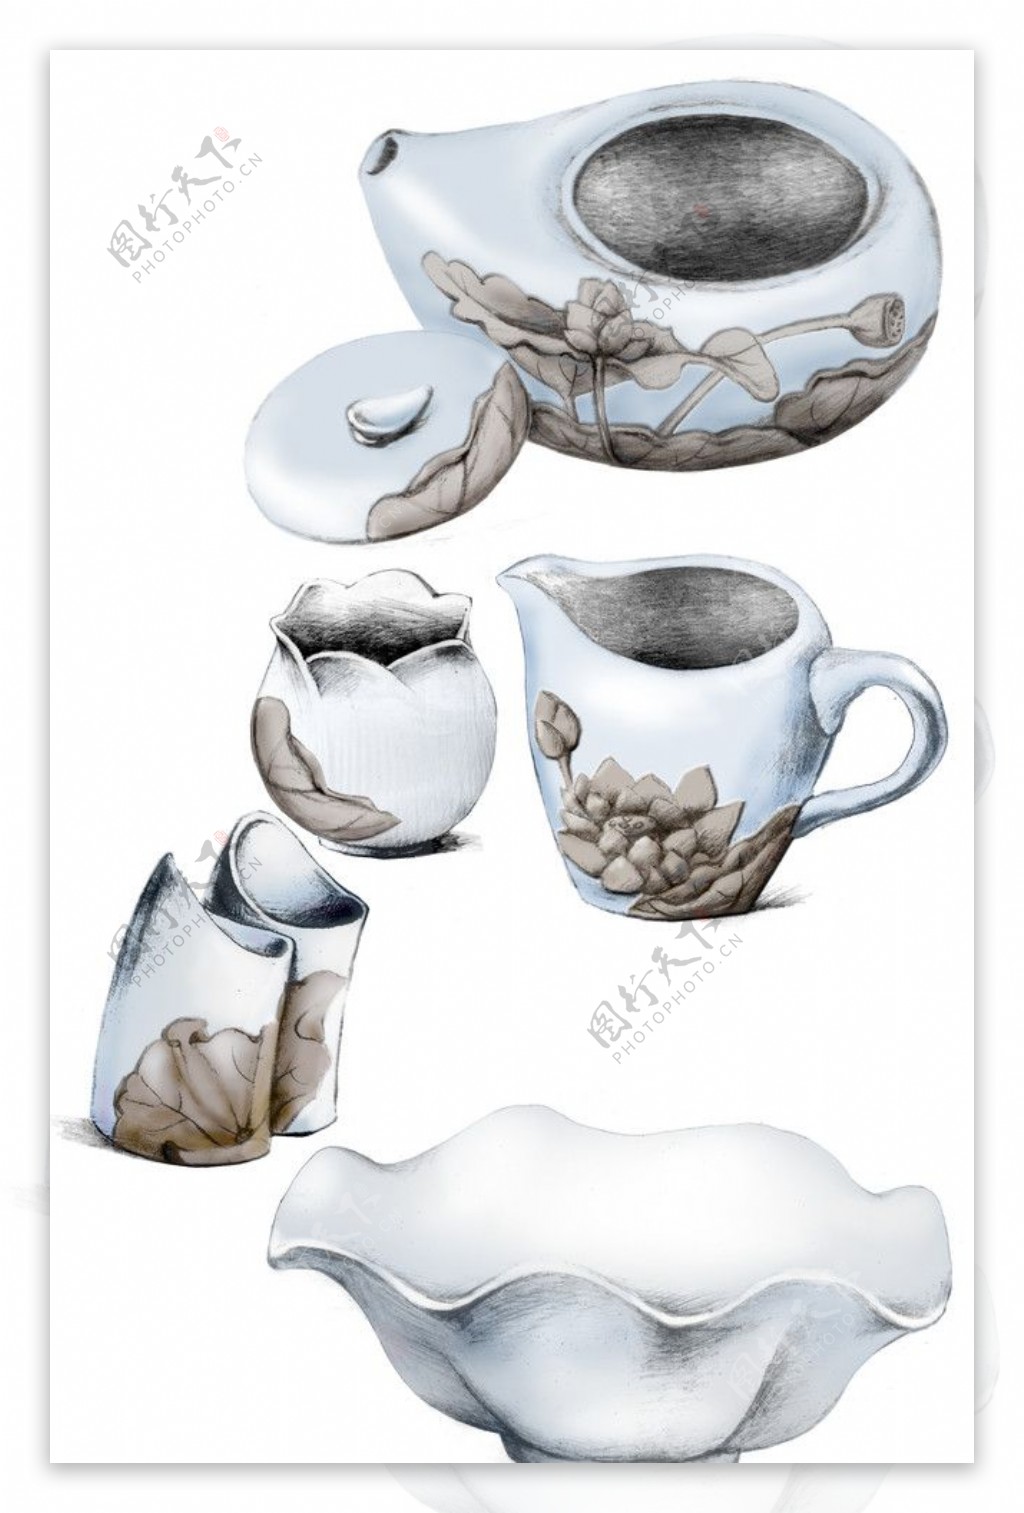 茶具设计图片